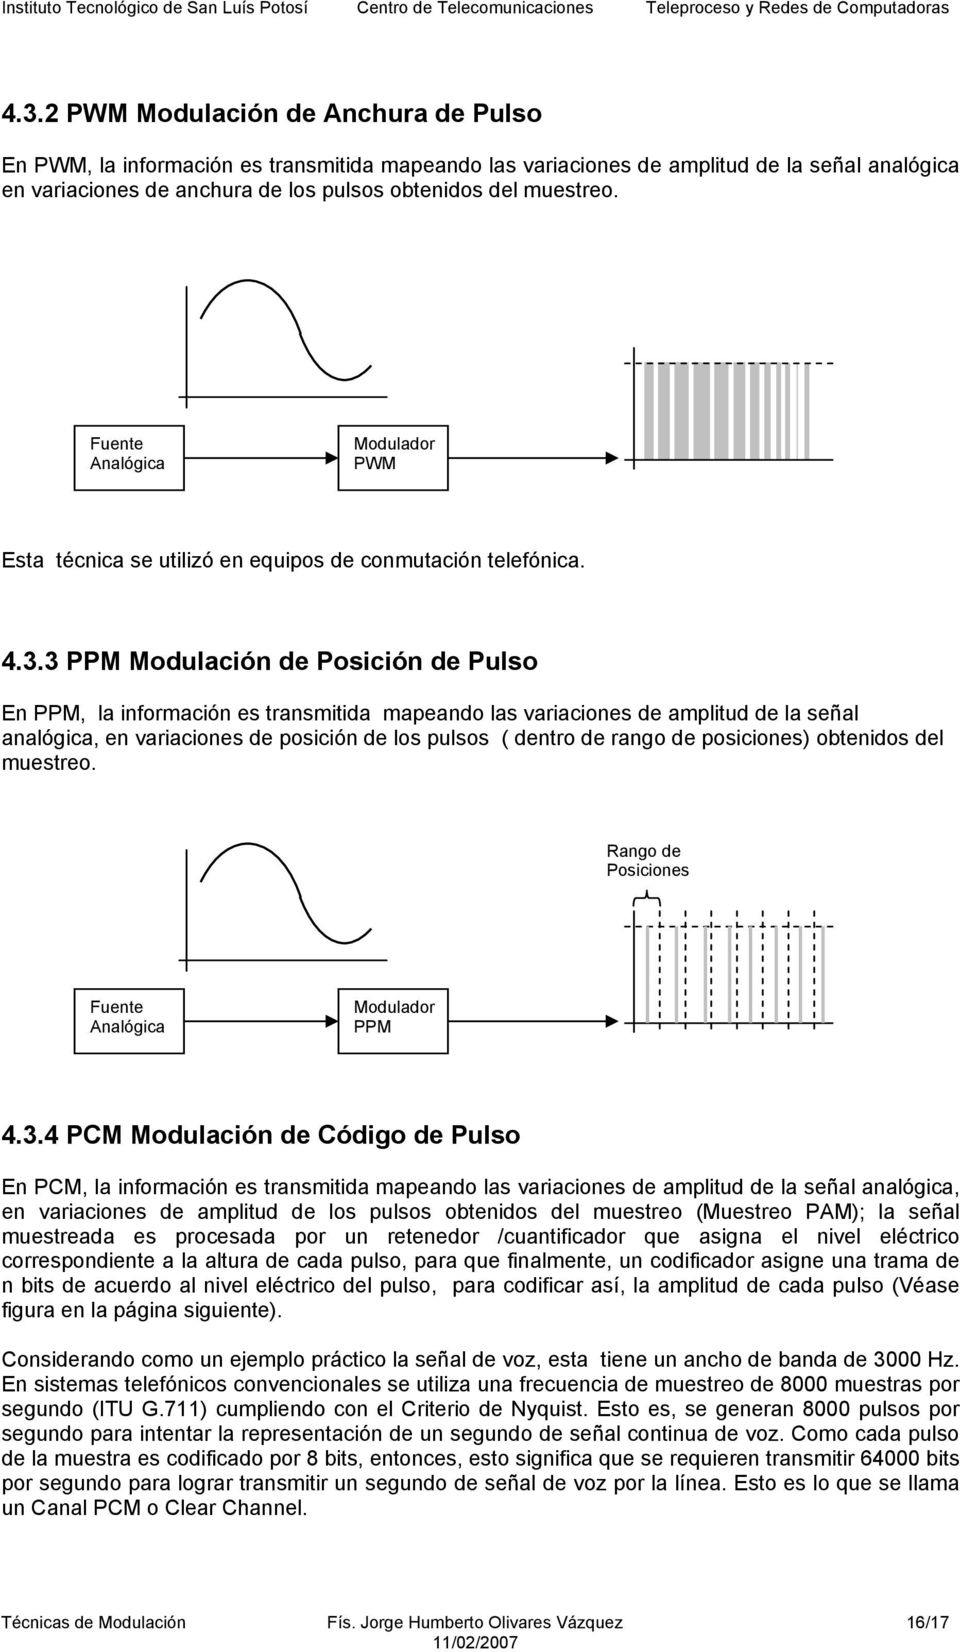 3 PPM Modulación de Posición de Pulso En PPM, la información es ransmiida mapeando las variaciones de ampliud de la señal analógica, en variaciones de posición de los pulsos ( denro de rango de